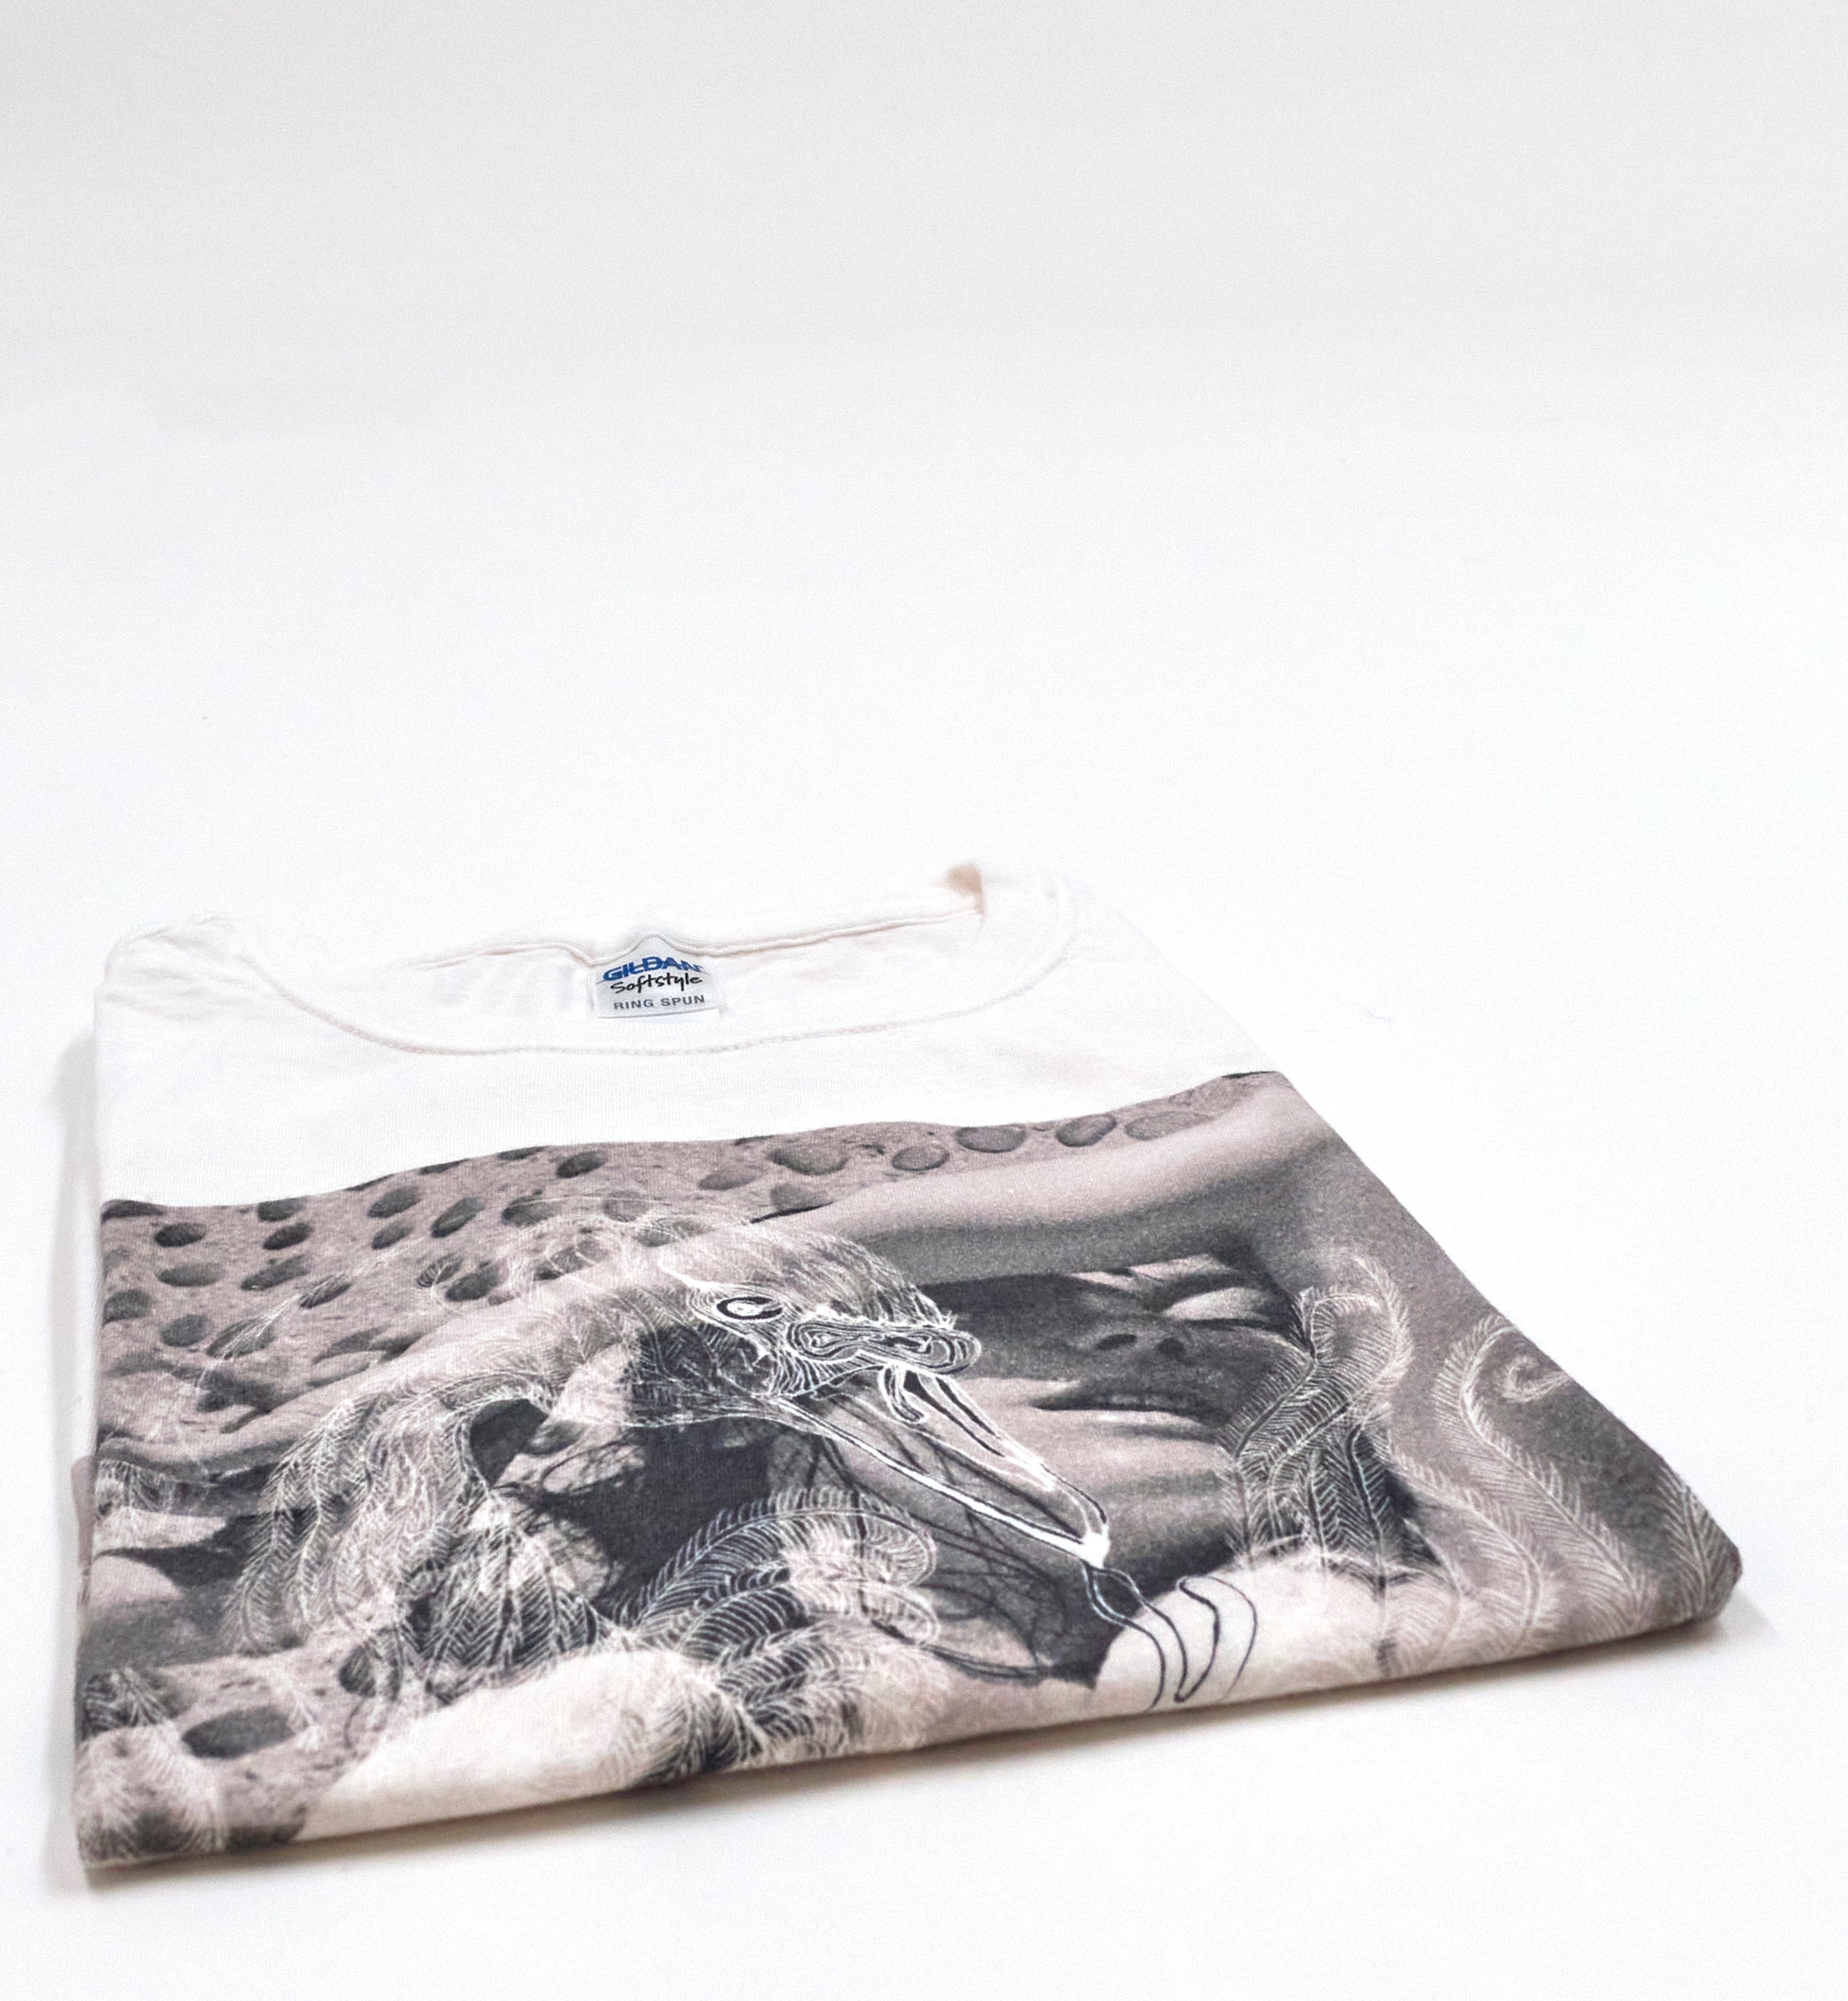 Björk - Vespertine Cover 2015 Tour Shirt Size Large